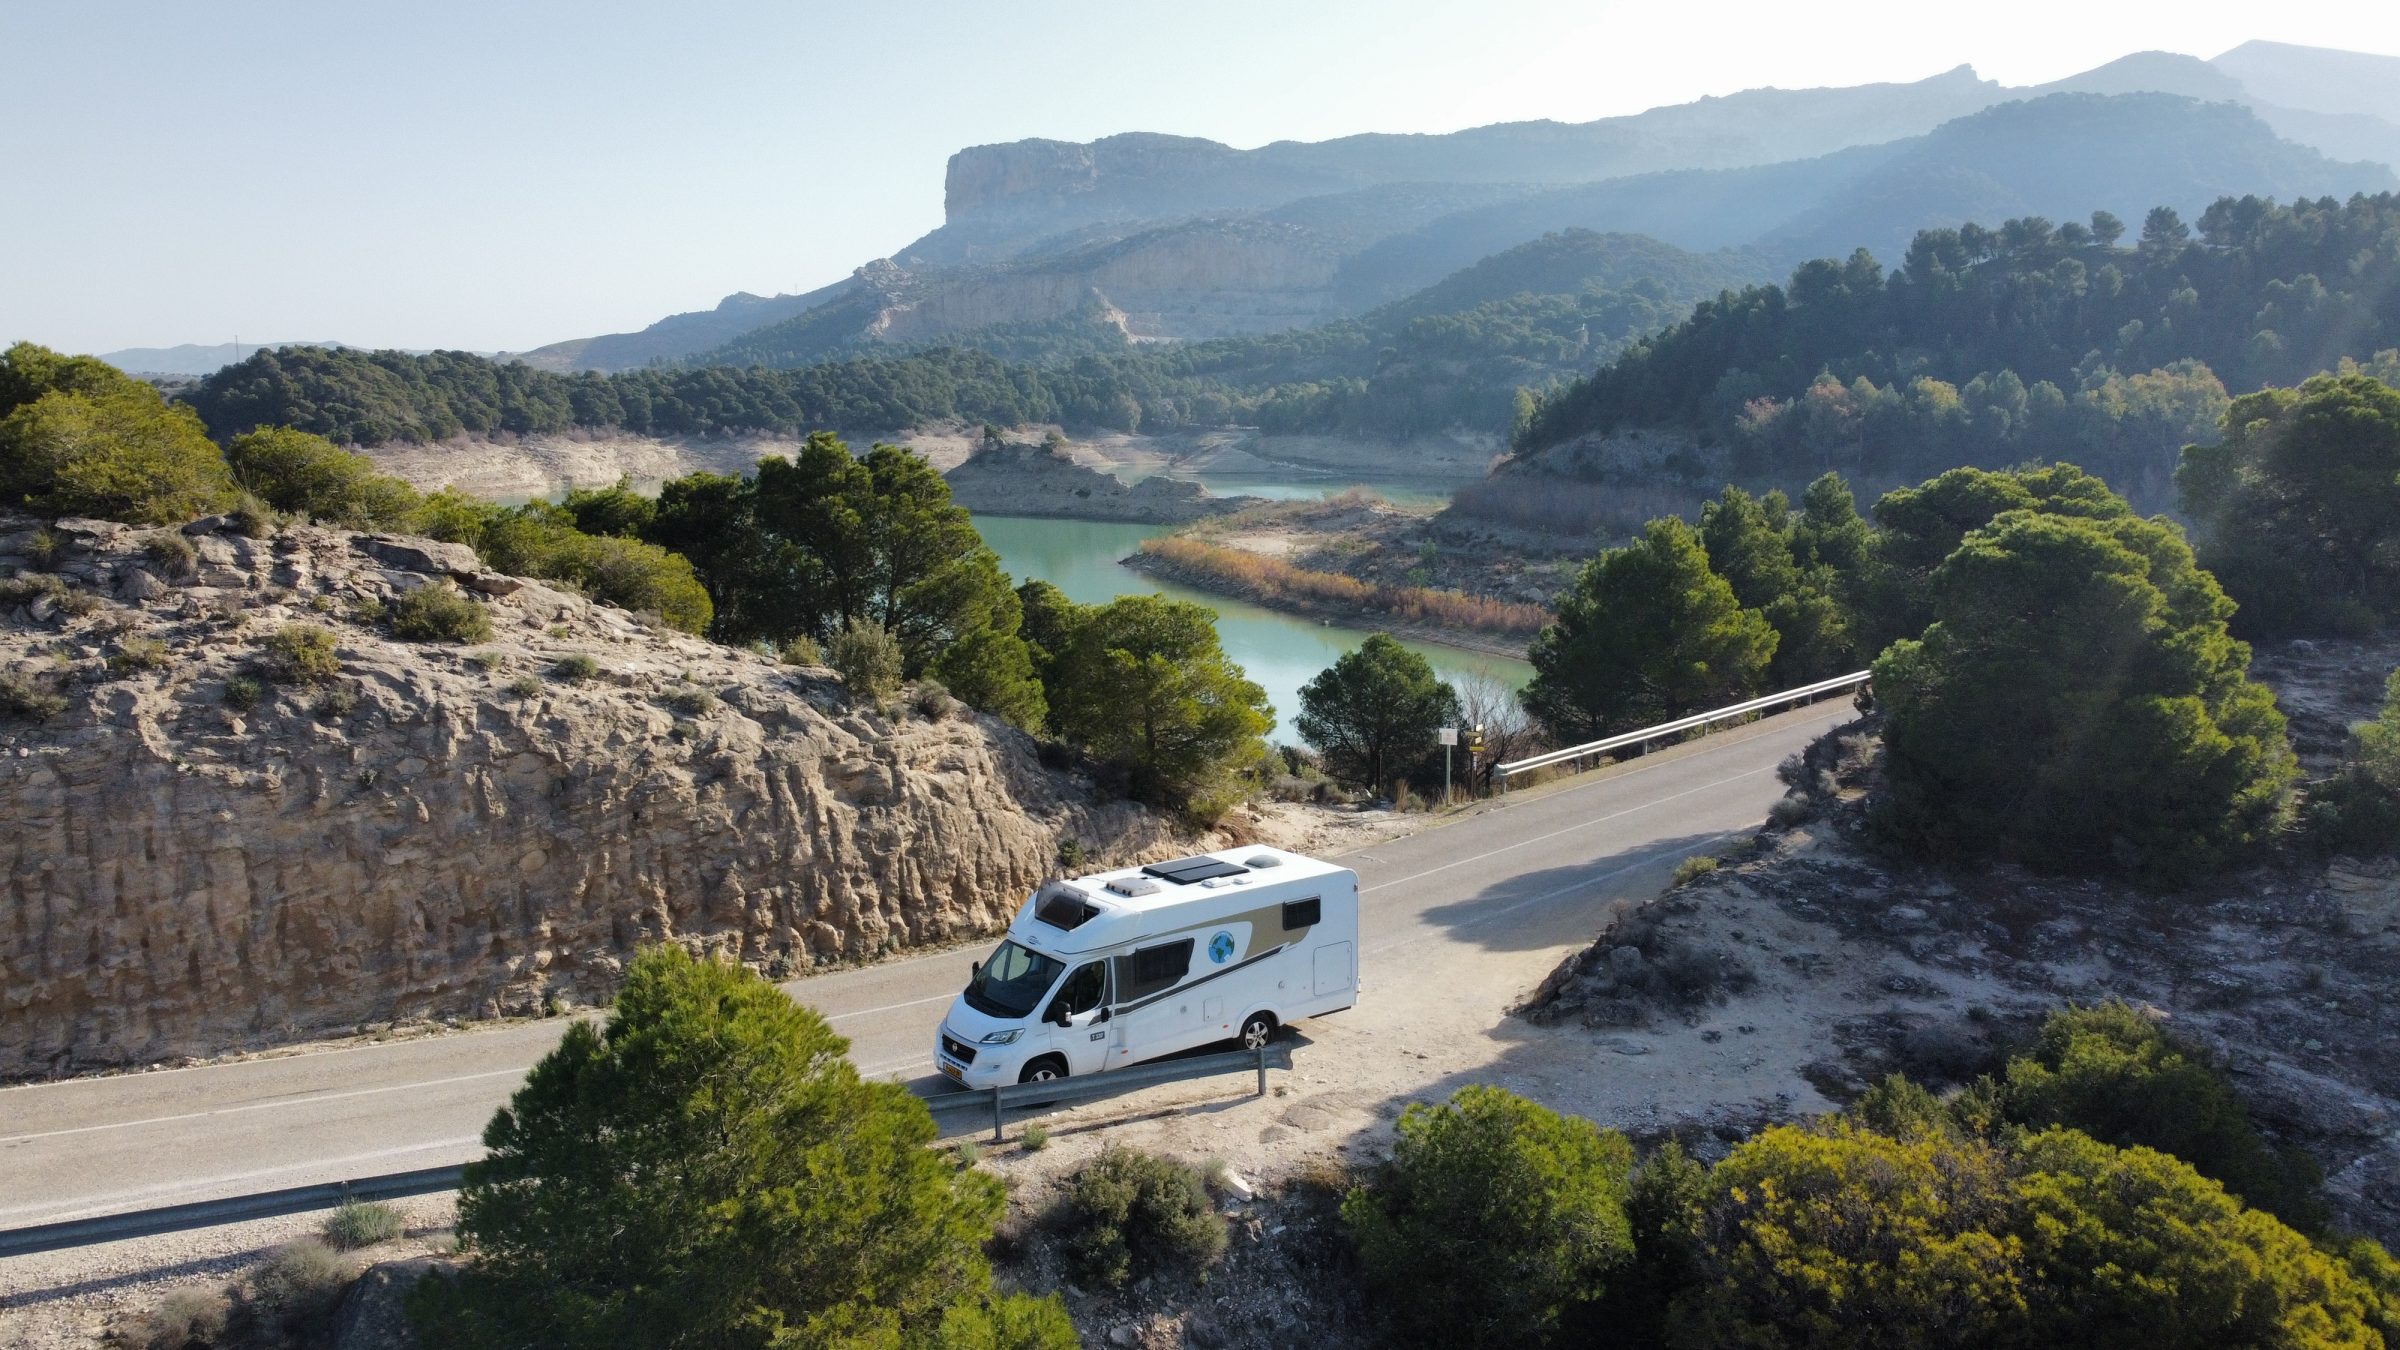 Samochód kempingowy w pięknym krajobrazie | Wskazówki dotyczące kamperów i ciekawe miejsca w południowej Hiszpanii